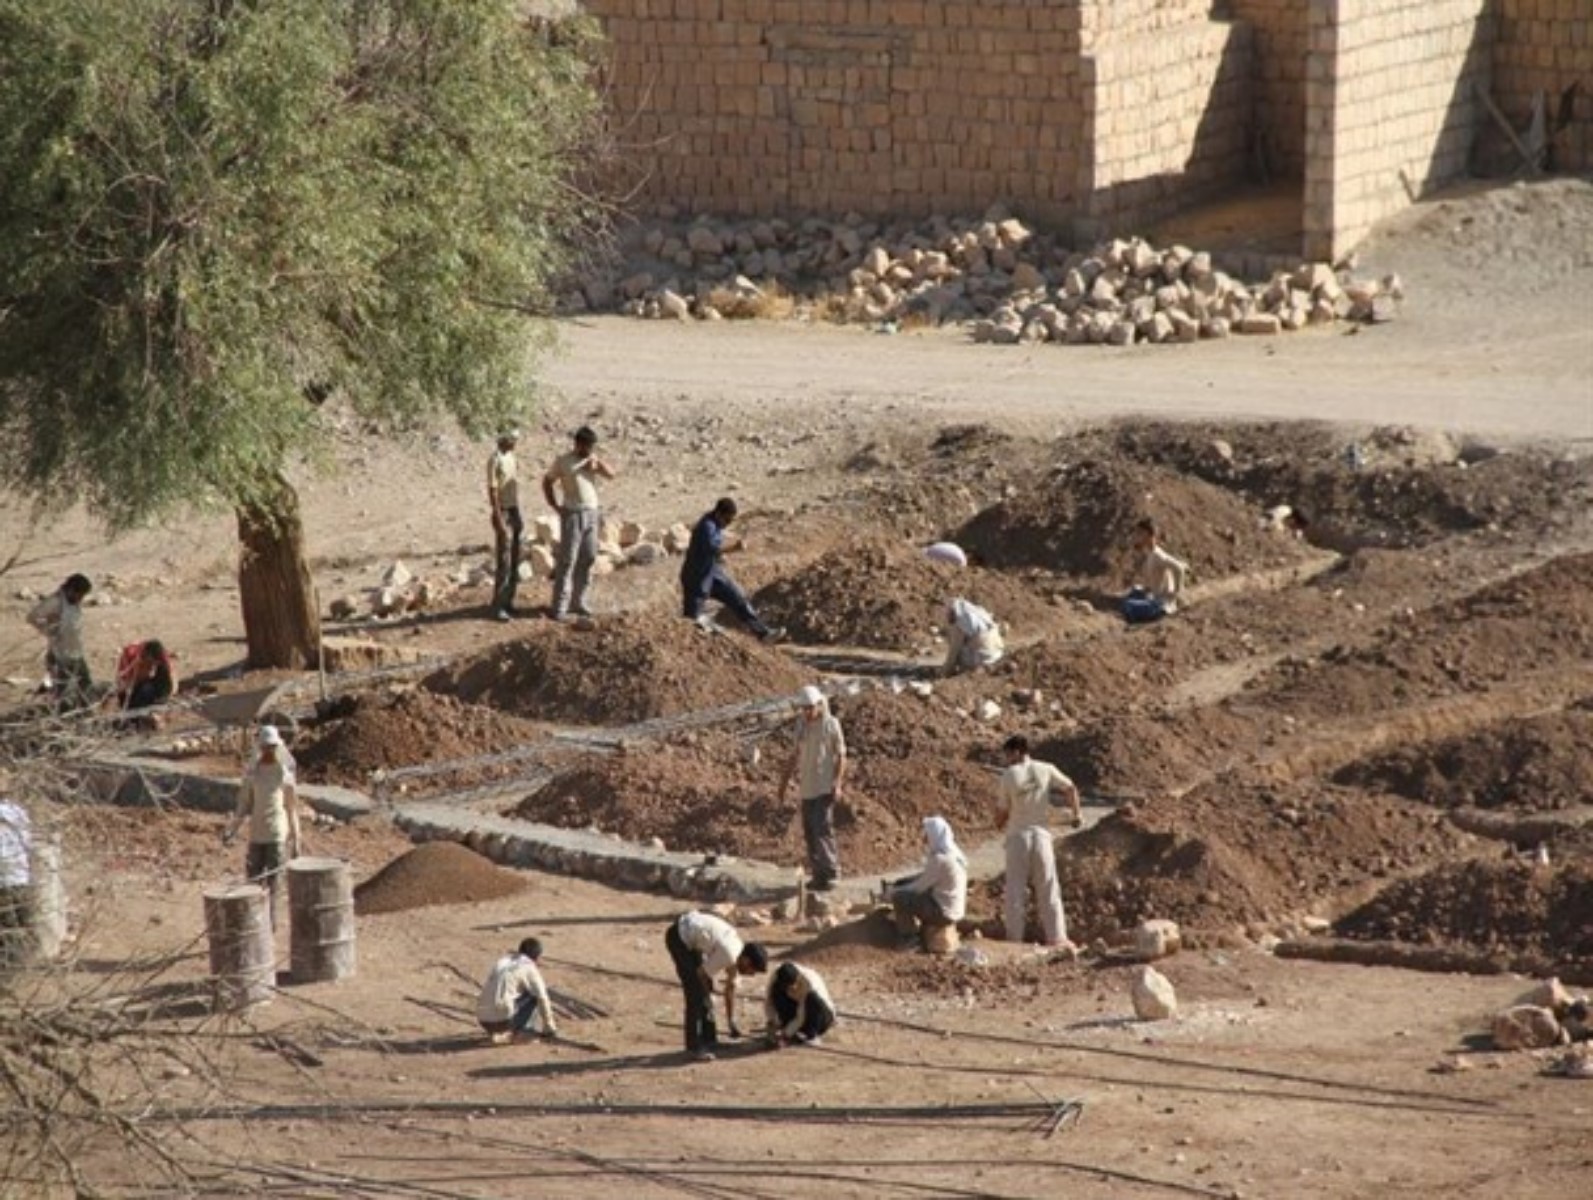 ۱۷۳ پروژه عمرانی توسط جهادگران البرزی در مناطق محروم اجرا می شود/ ۱۰ منطقه آلوده به مواد مخدر در البرز شناسایی شد